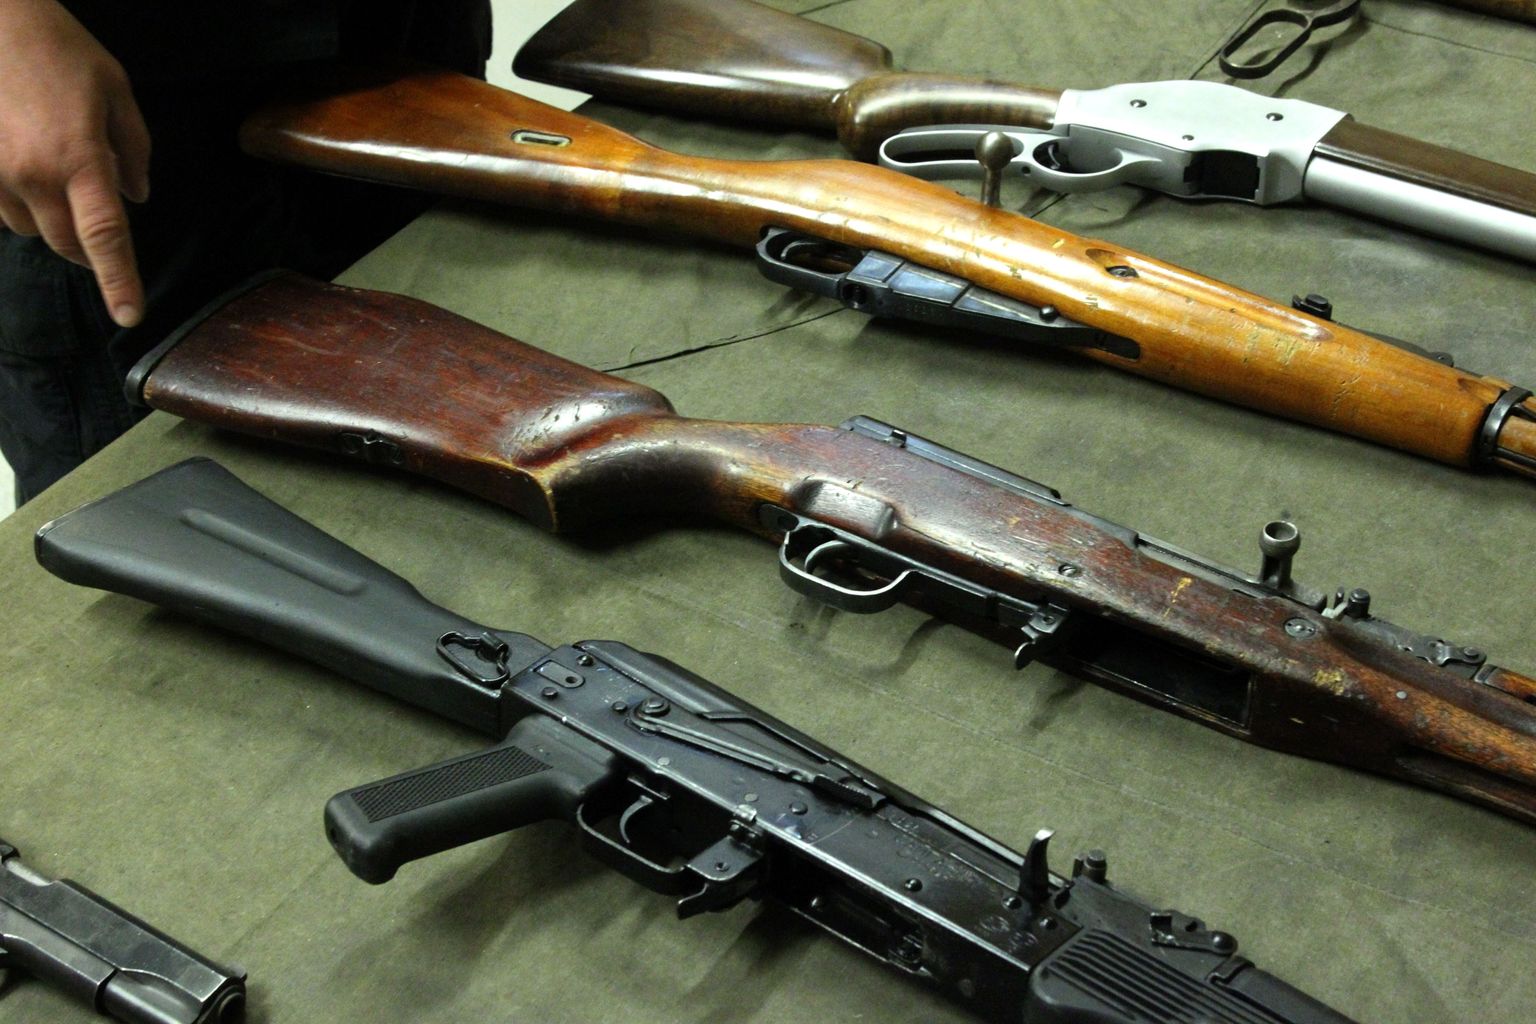 Обвиняемые приобрели около двадцати экземпляров огнестрельного оружия — в том числе автоматы, пистолеты-пулеметы, пистолеты, винтовки и охотничьи ружья.